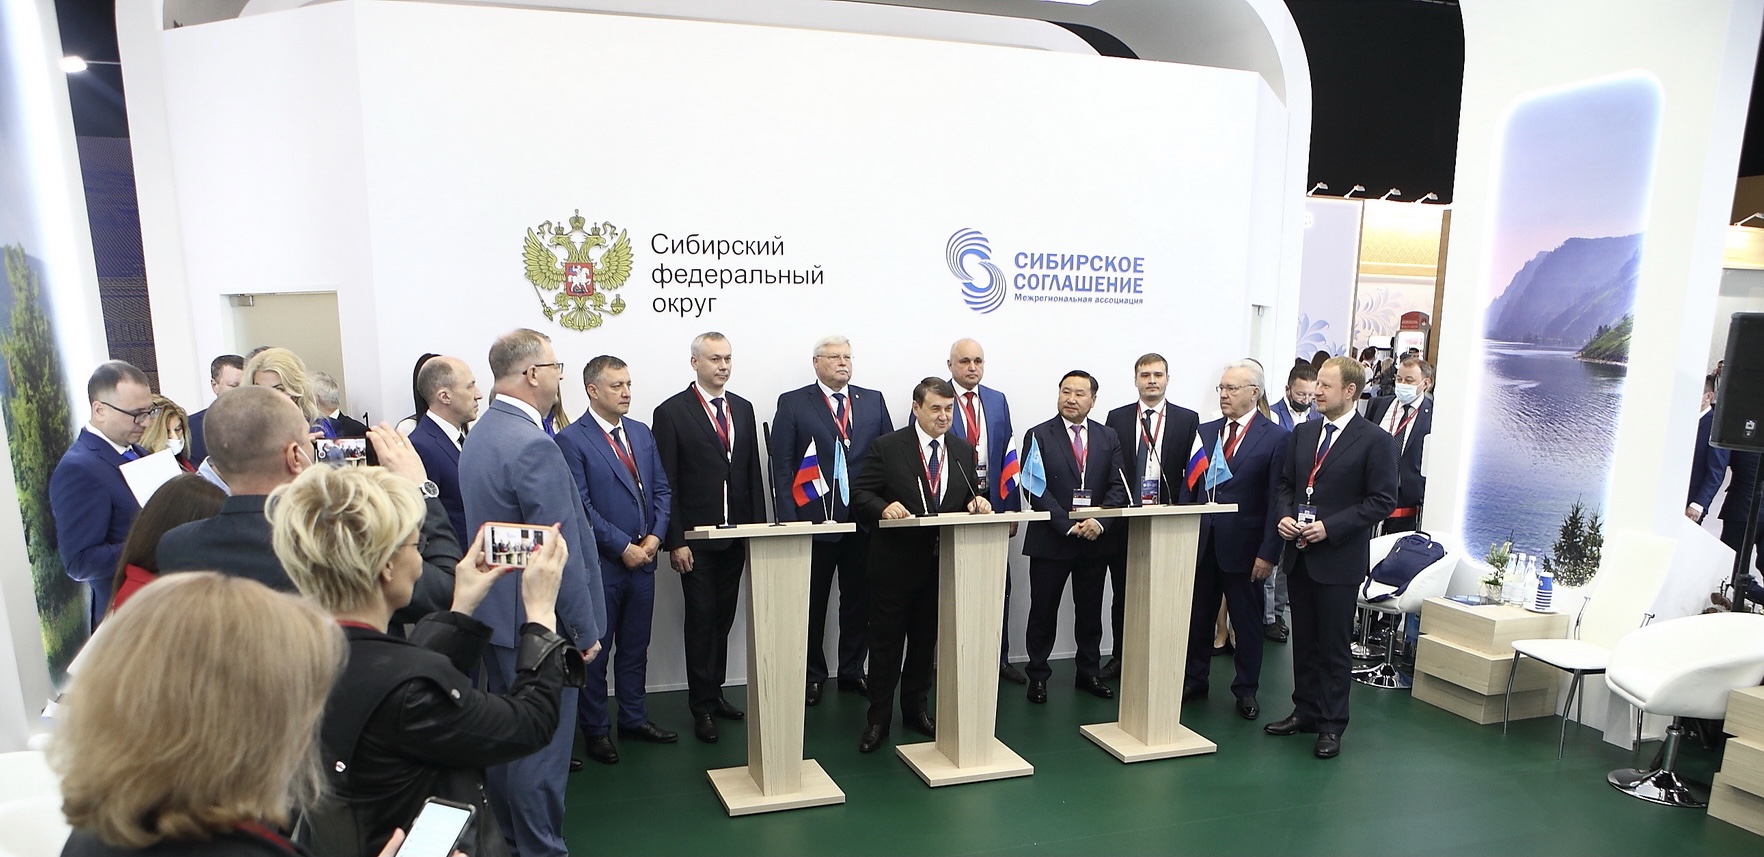 Томский губернатор подписал с сибирскими коллегами соглашение в сфере туризма